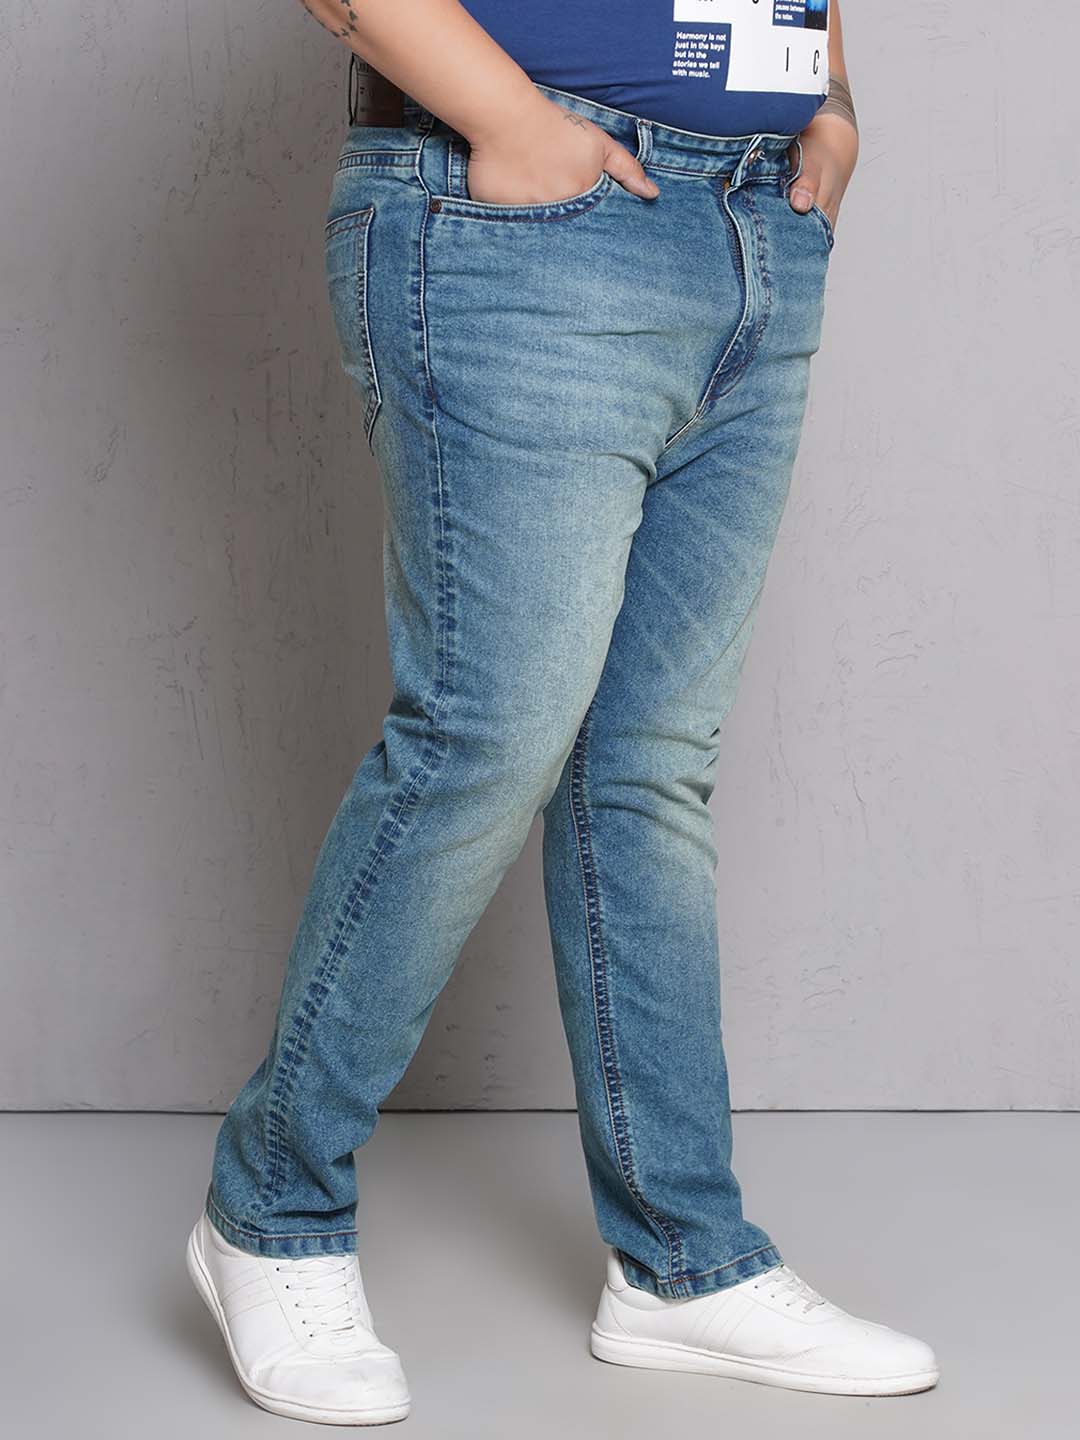 bottomwear/jeans/EJPJ25148/ejpj25148-3.jpg